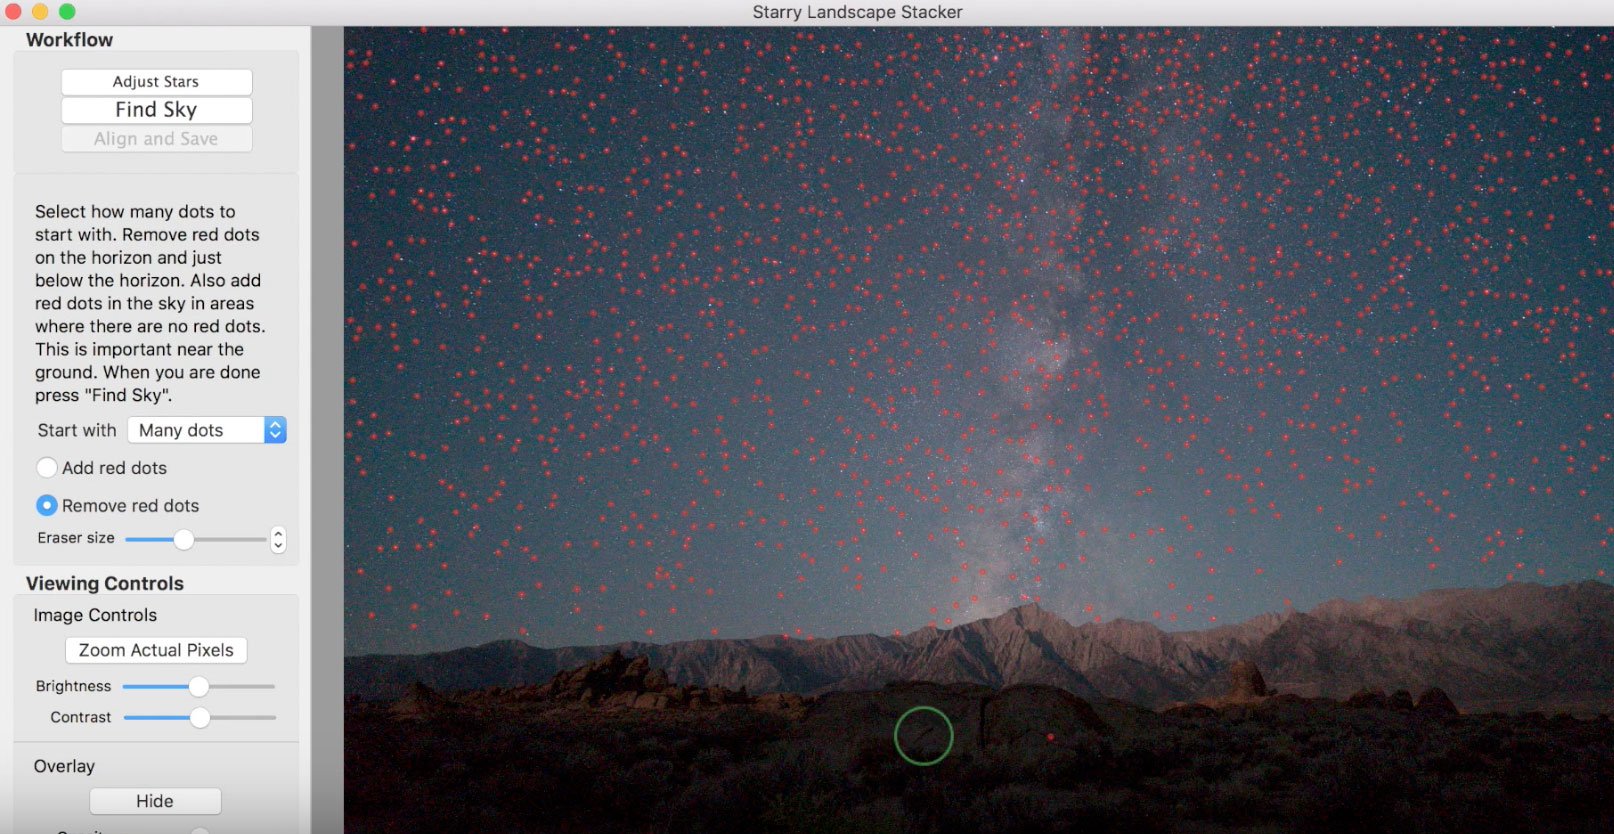 Star Landscape Starry Landscape Stacker For Mac